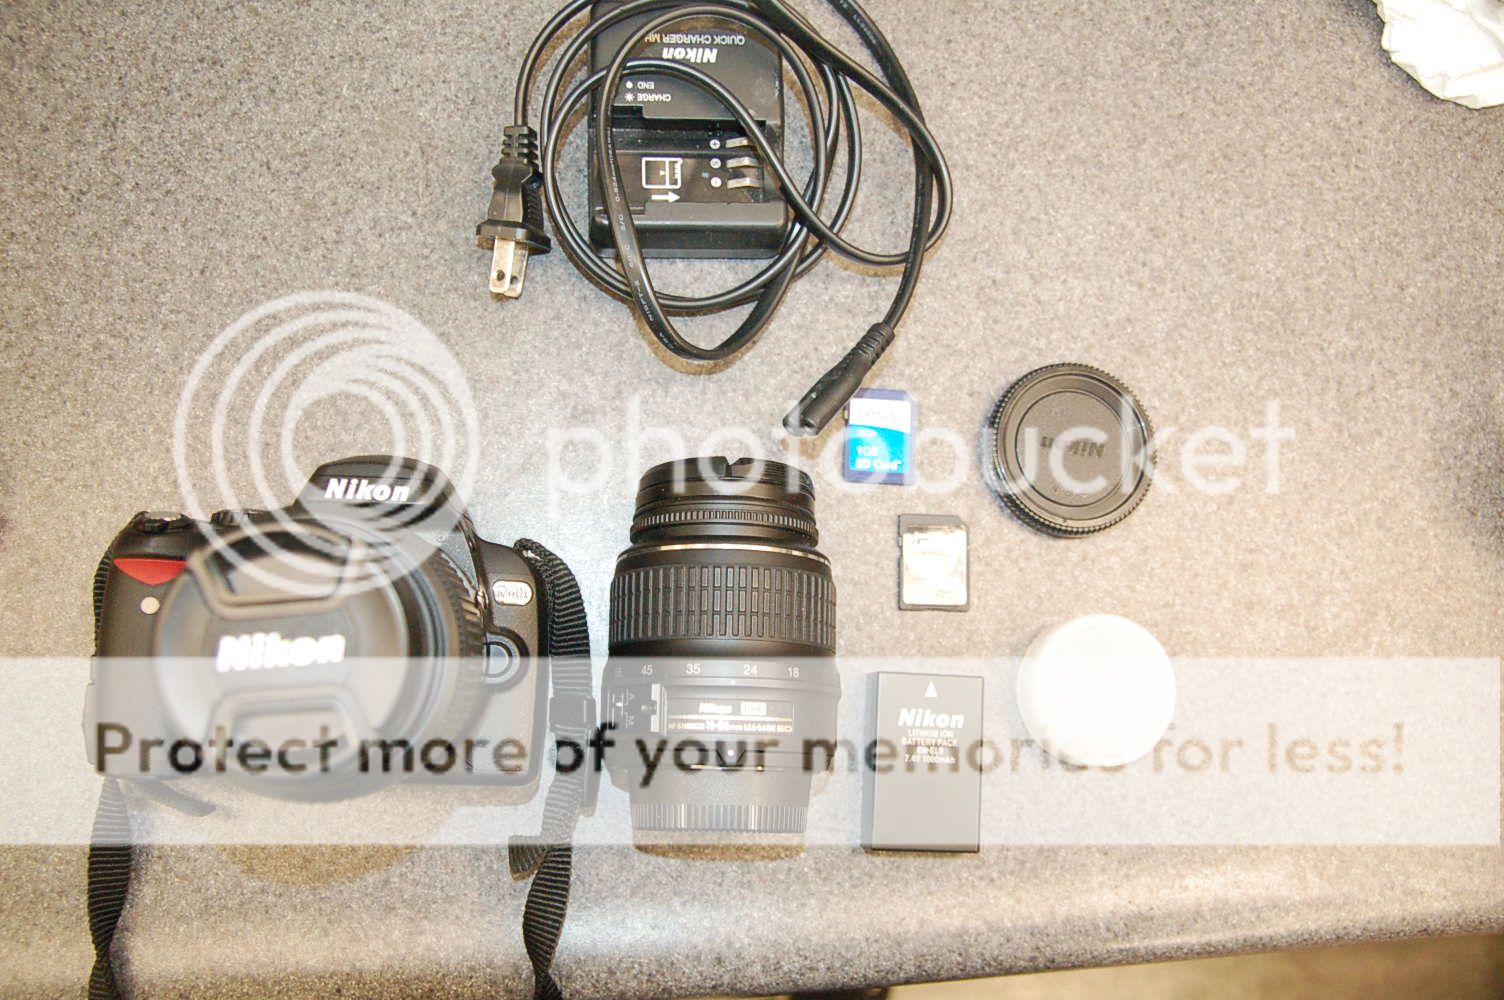   10.2 Megapixel Digital SLR Camera Two Lens Kit, with 18 55mm f/3.5 5